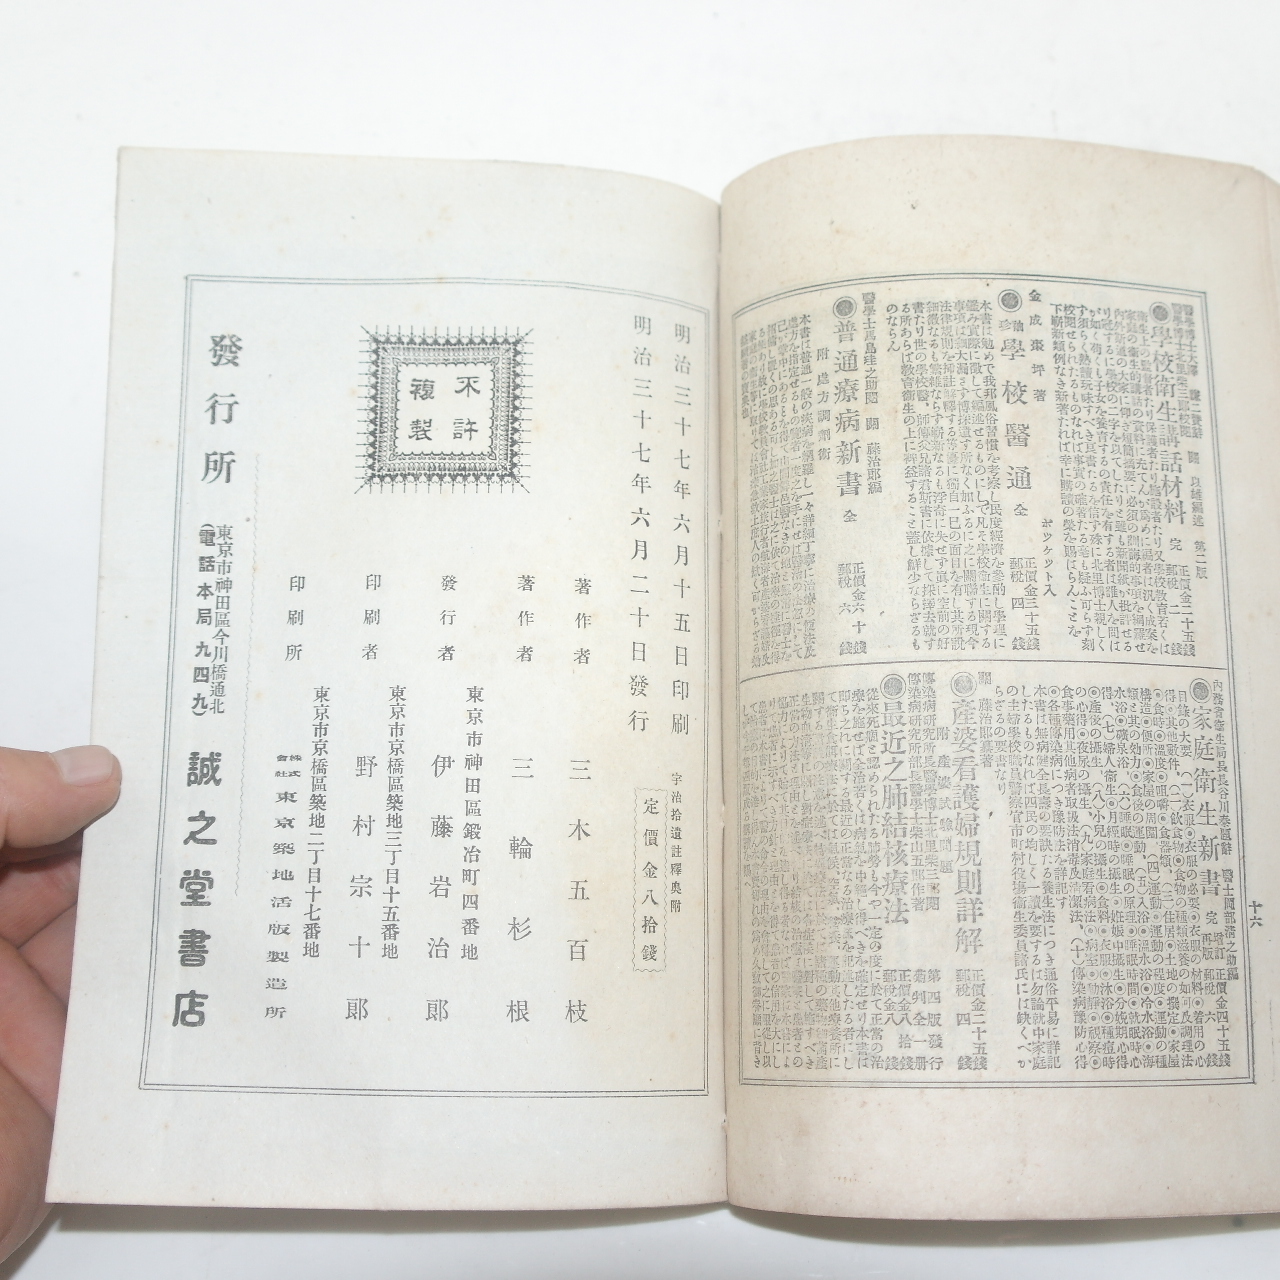 1904년(명치37년) 일본간행 우치습유물어주석(宇治拾遺物語註釋)